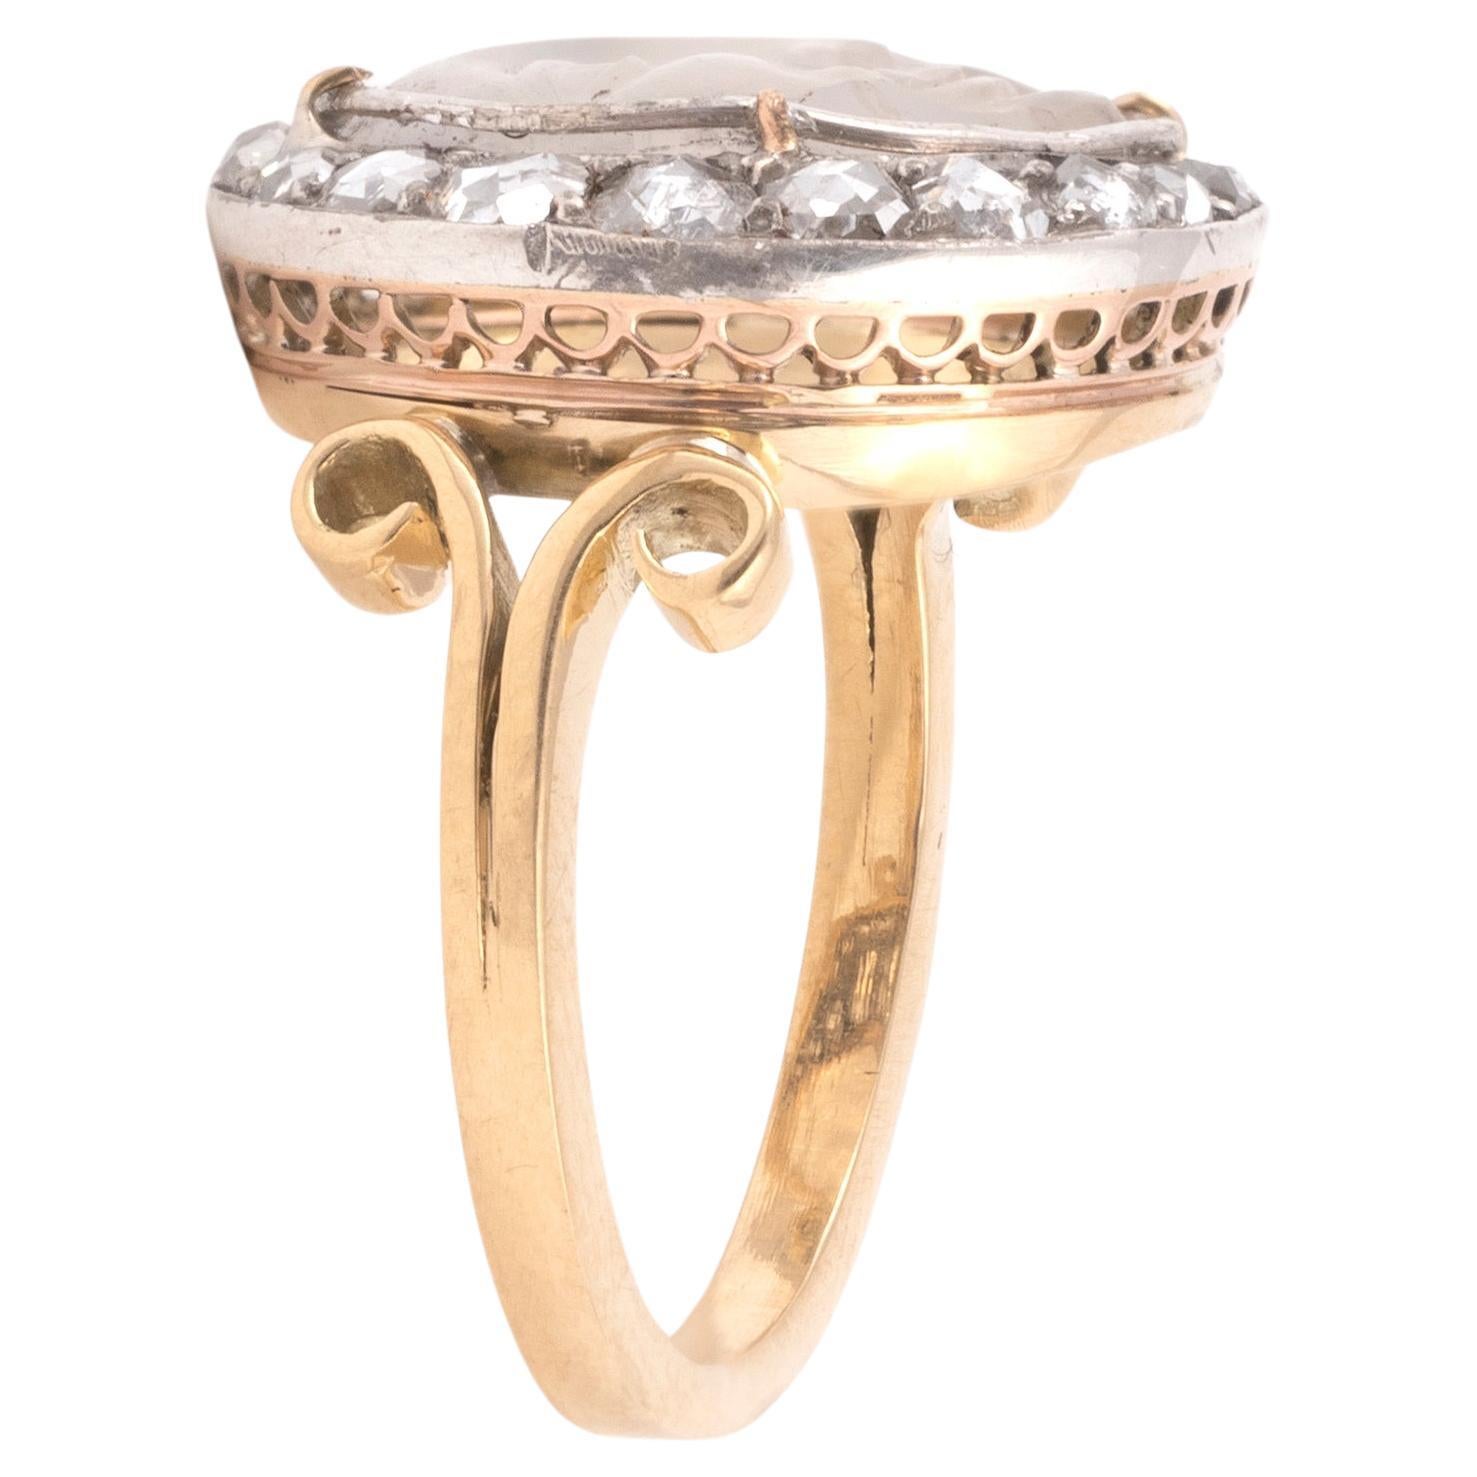 Ein Mann-im-Mond-Ring aus dem späten 19. Jahrhundert, gefasst in Silber und Gold mit einem geschnitzten Mondstein in einem rosa Diamanten. Auf goldenem, geriffeltem Schaft mit gegabelten Schultern und goldener Unterlünette.
Englisch, Mitte bis Ende